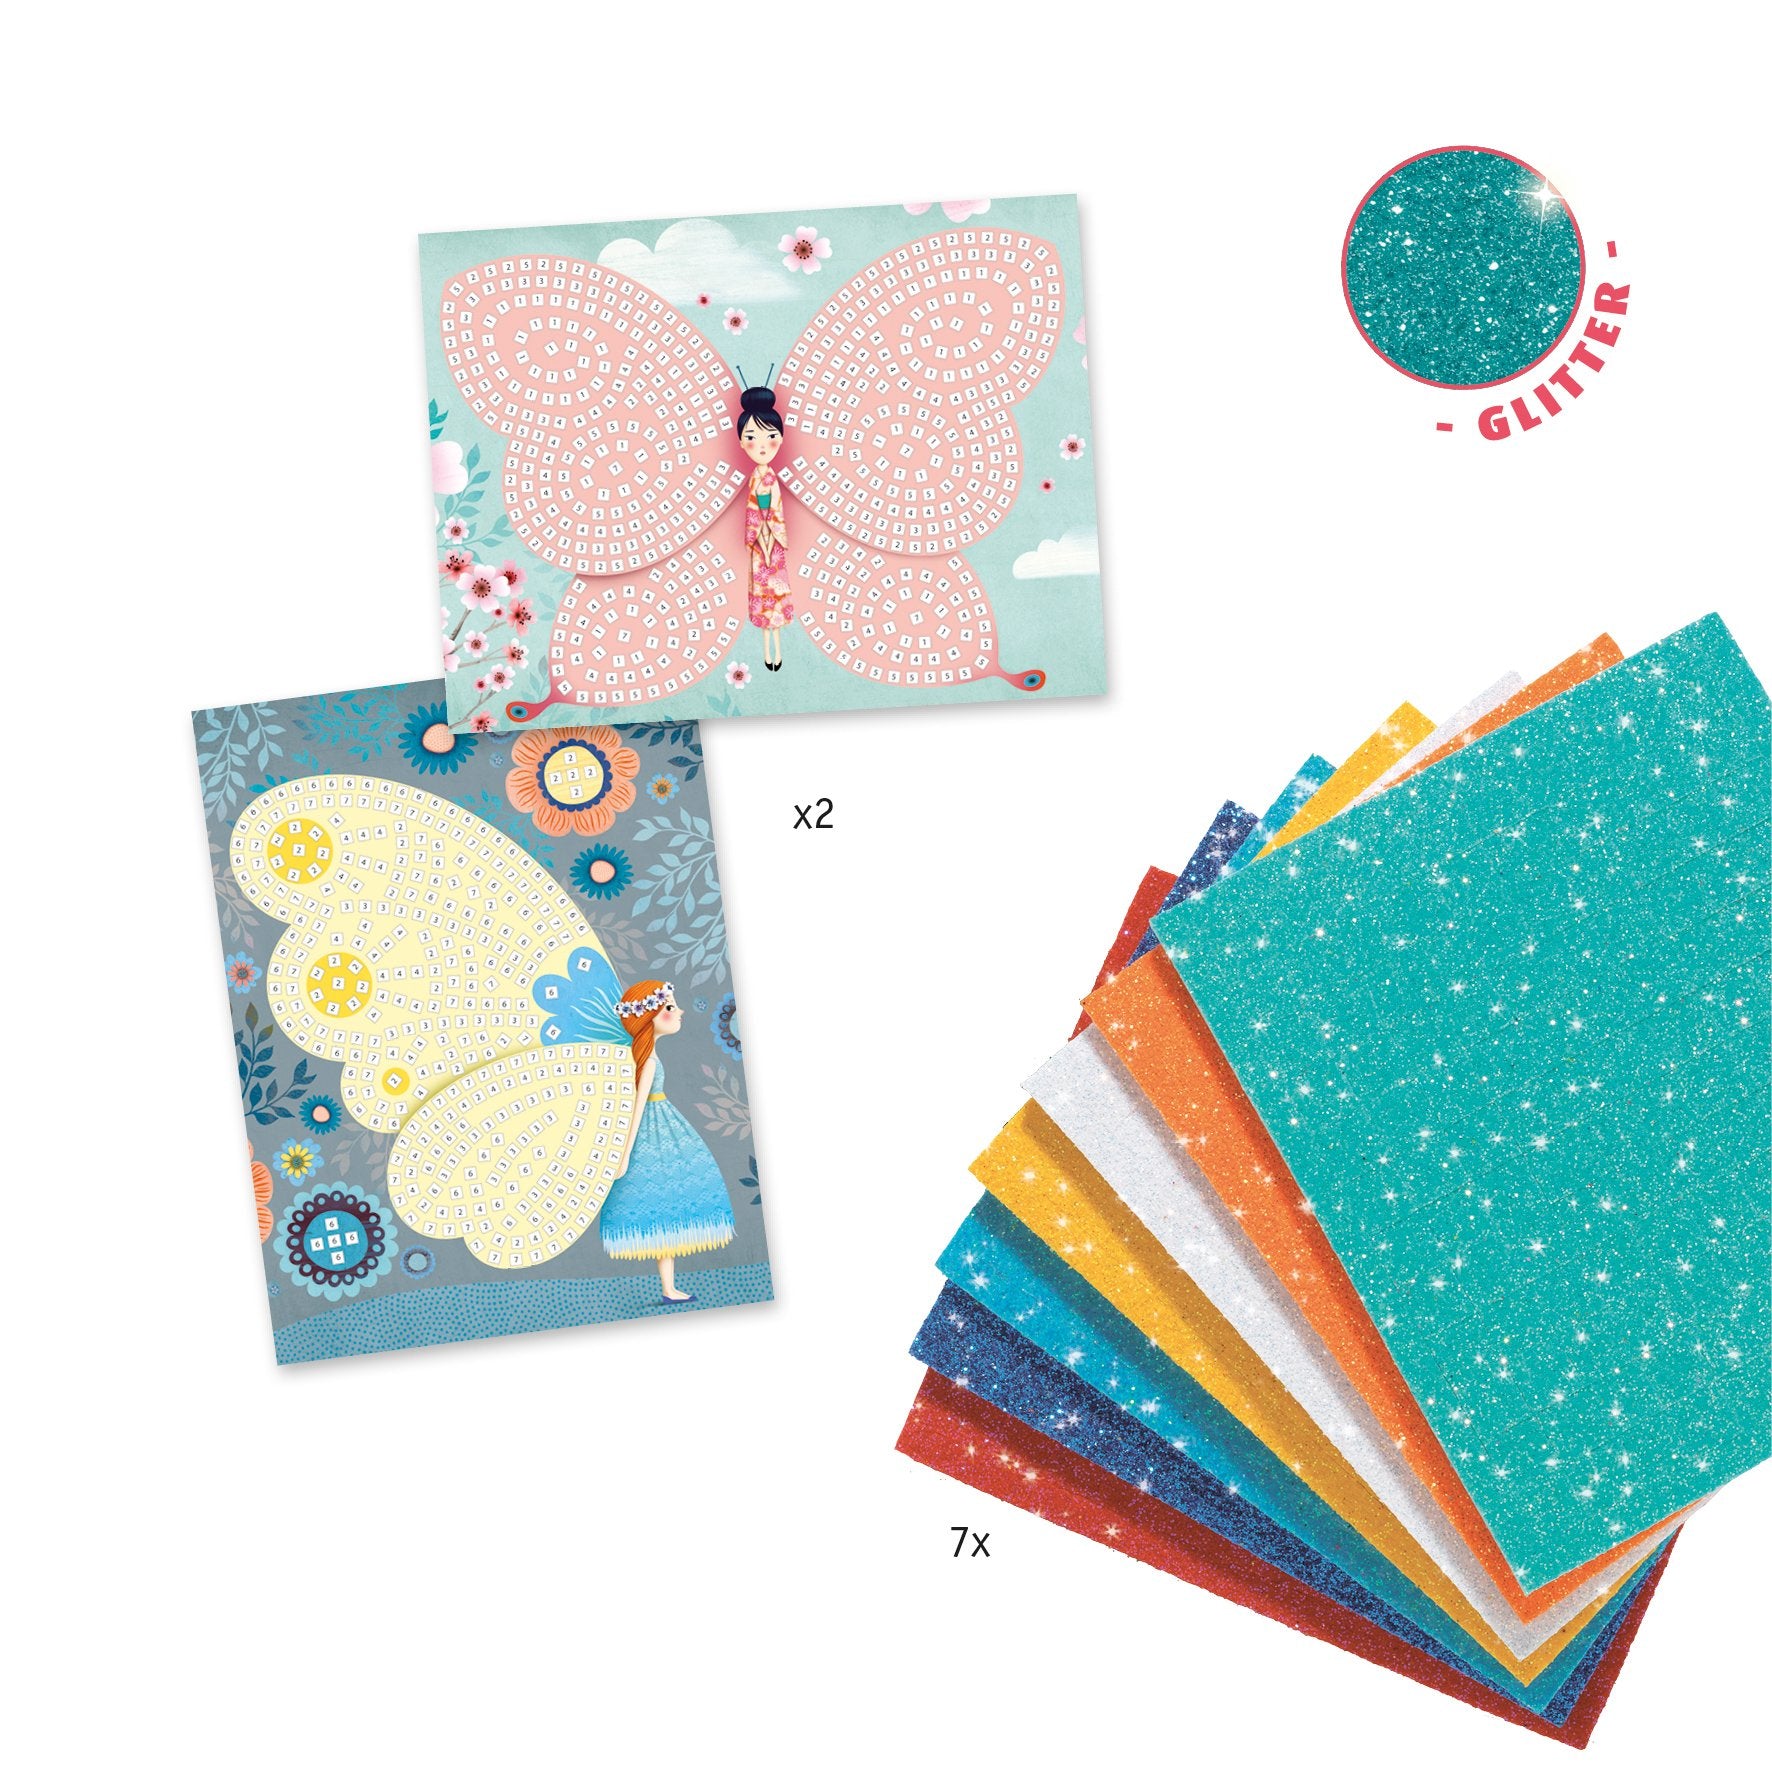 Butterflies Sticker Mosaic Craft Kit